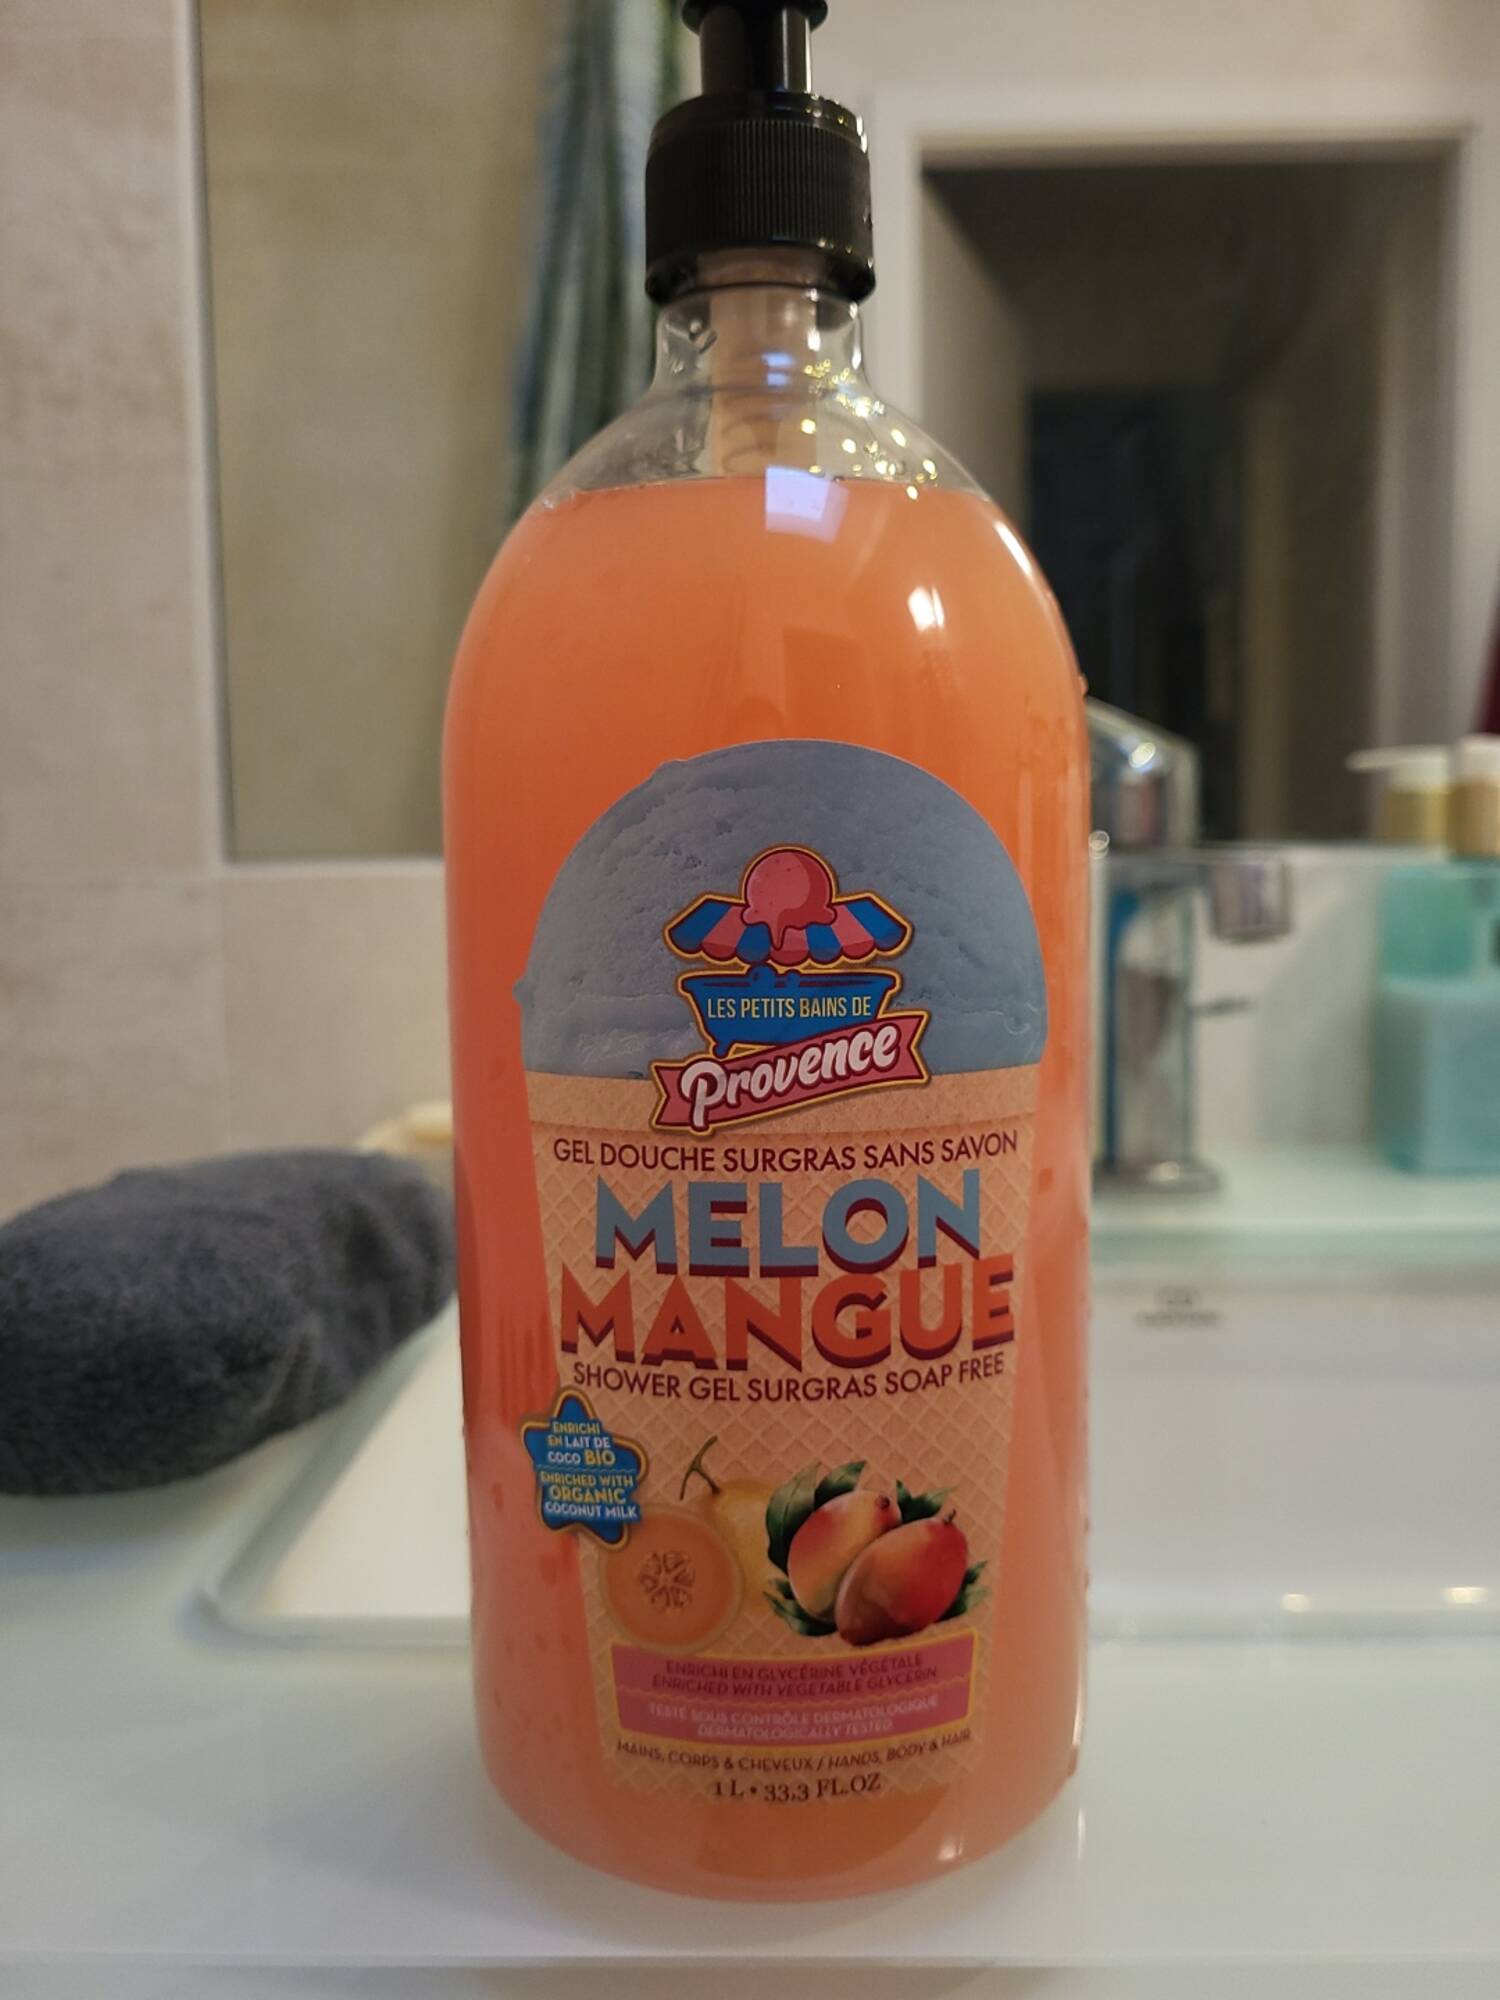 LES PETITS BAINS DE PROVENCE - Melon mangue - Gel douche surgras sans savon 